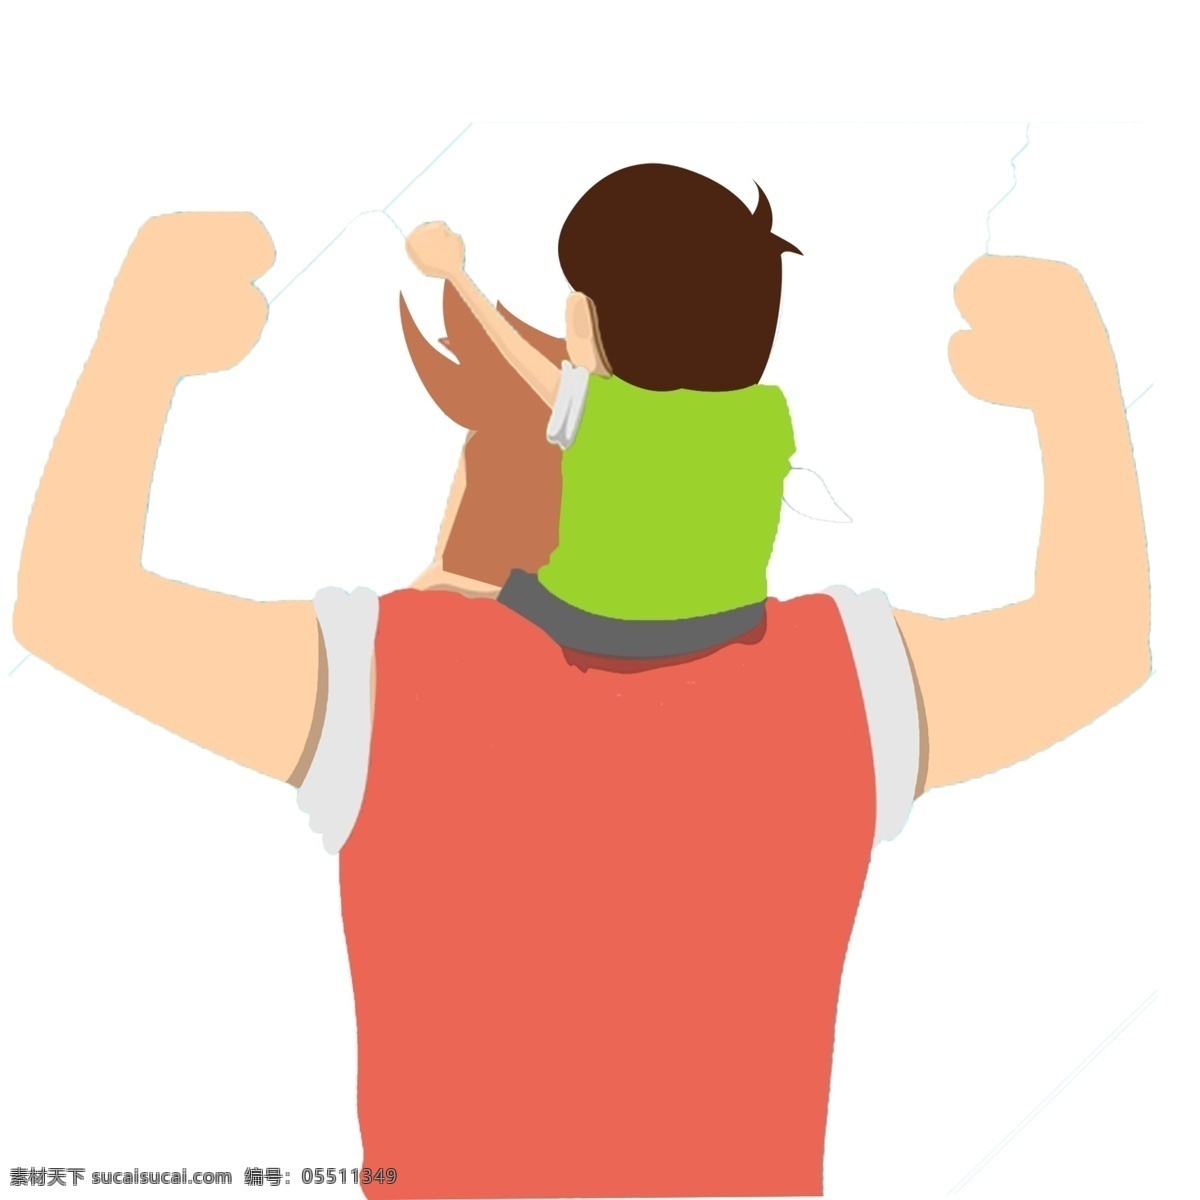 父亲节 父亲 儿子 父子 力量 节日 亲子 服装 大人 小孩 两个人 举手臂 插画 手绘